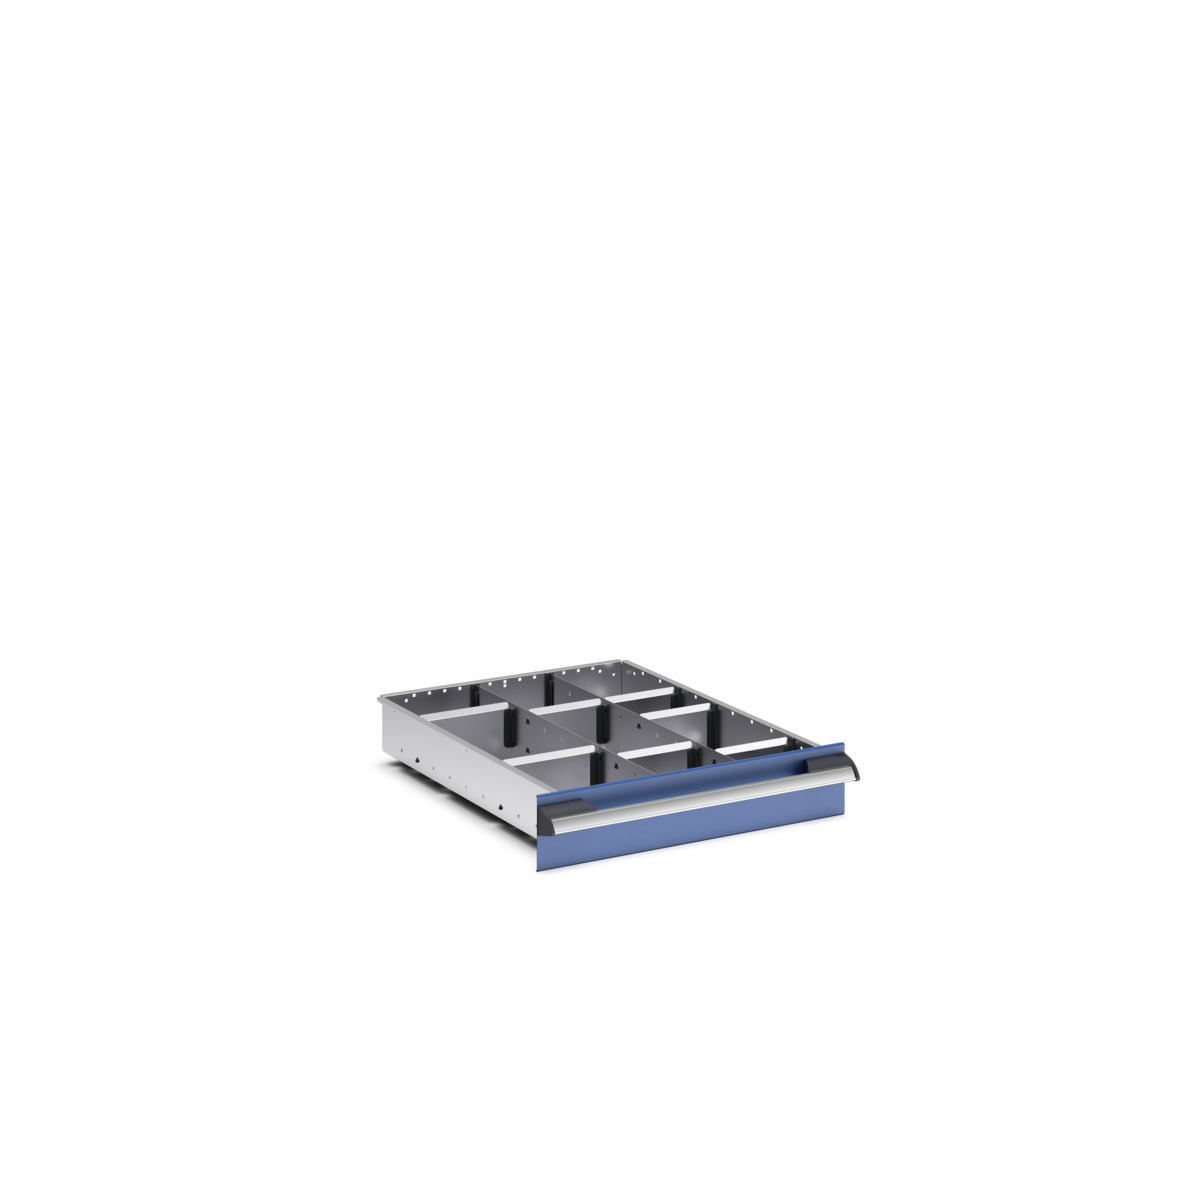 43020715.51 - cubio adjustable divider kit